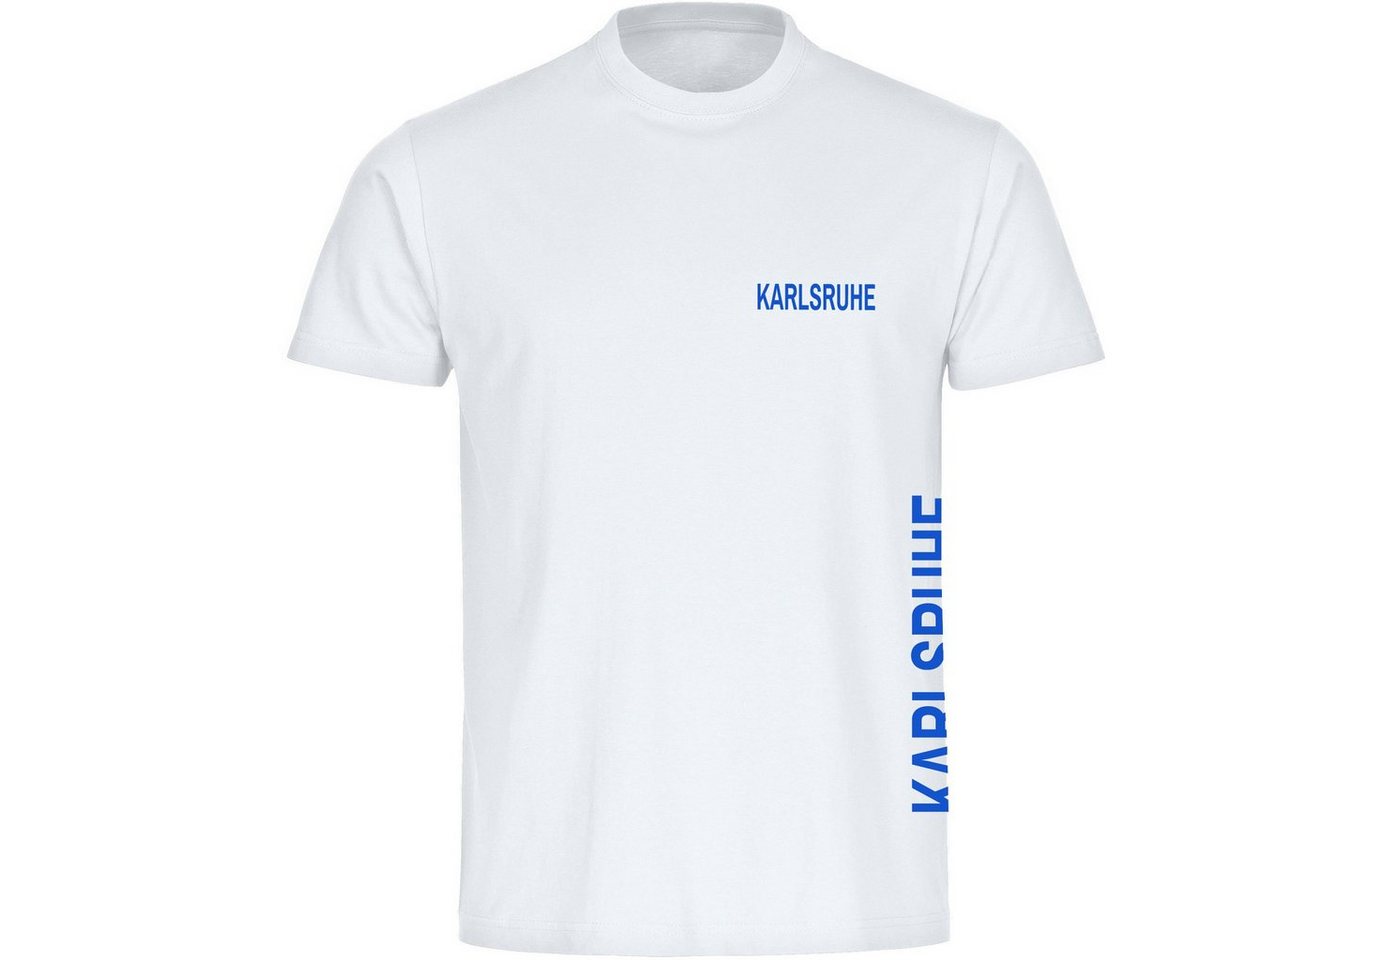 multifanshop T-Shirt Herren Karlsruhe - Brust & Seite - Männer von multifanshop